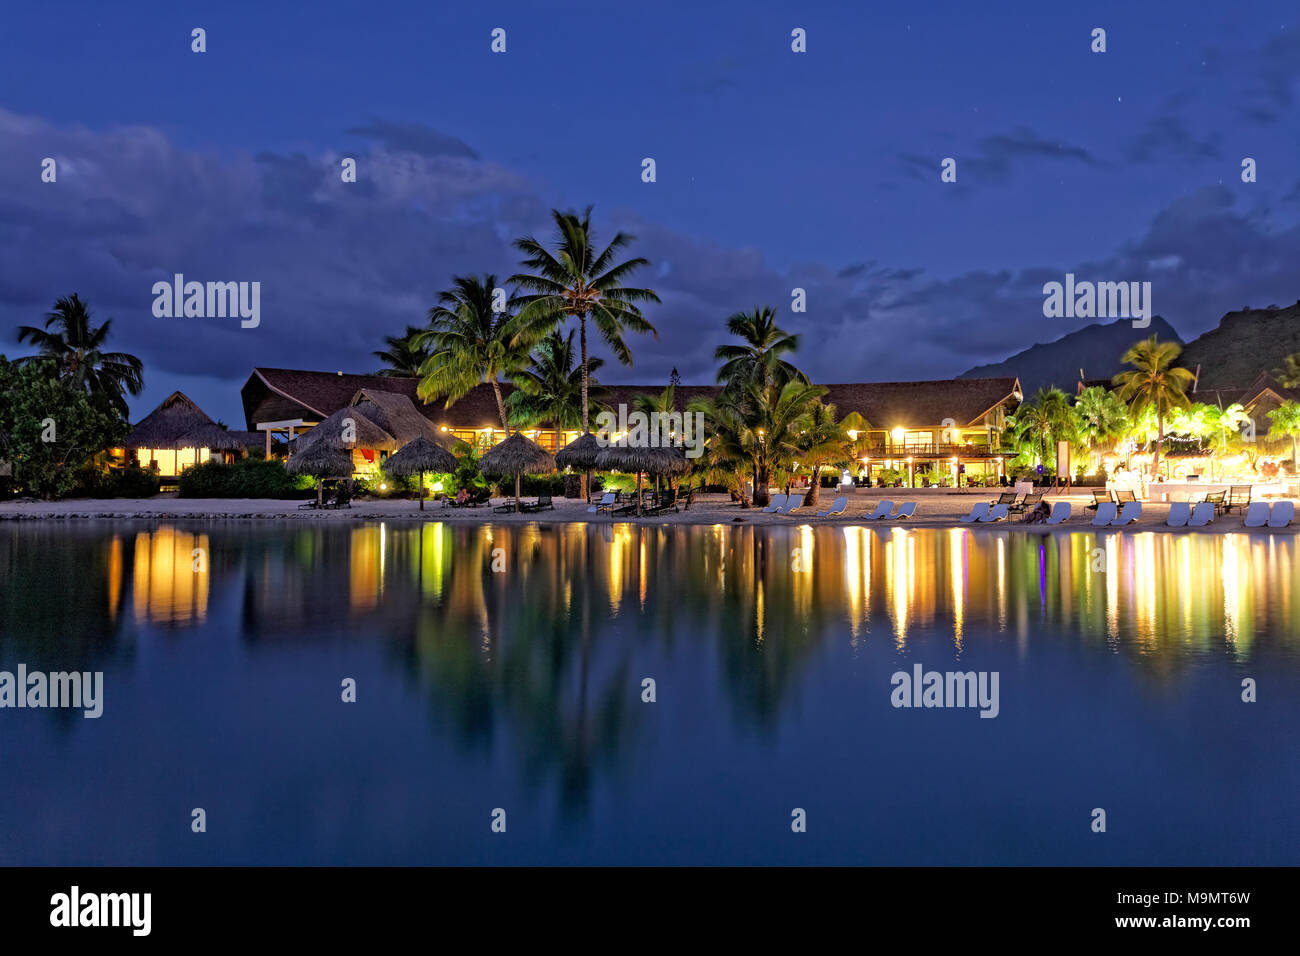 Por la noche el hotel, hotel de lujo, Resort, Interconti Moorea, las islas de la sociedad, islas de Sotavento, Océano Pacífico Foto de stock